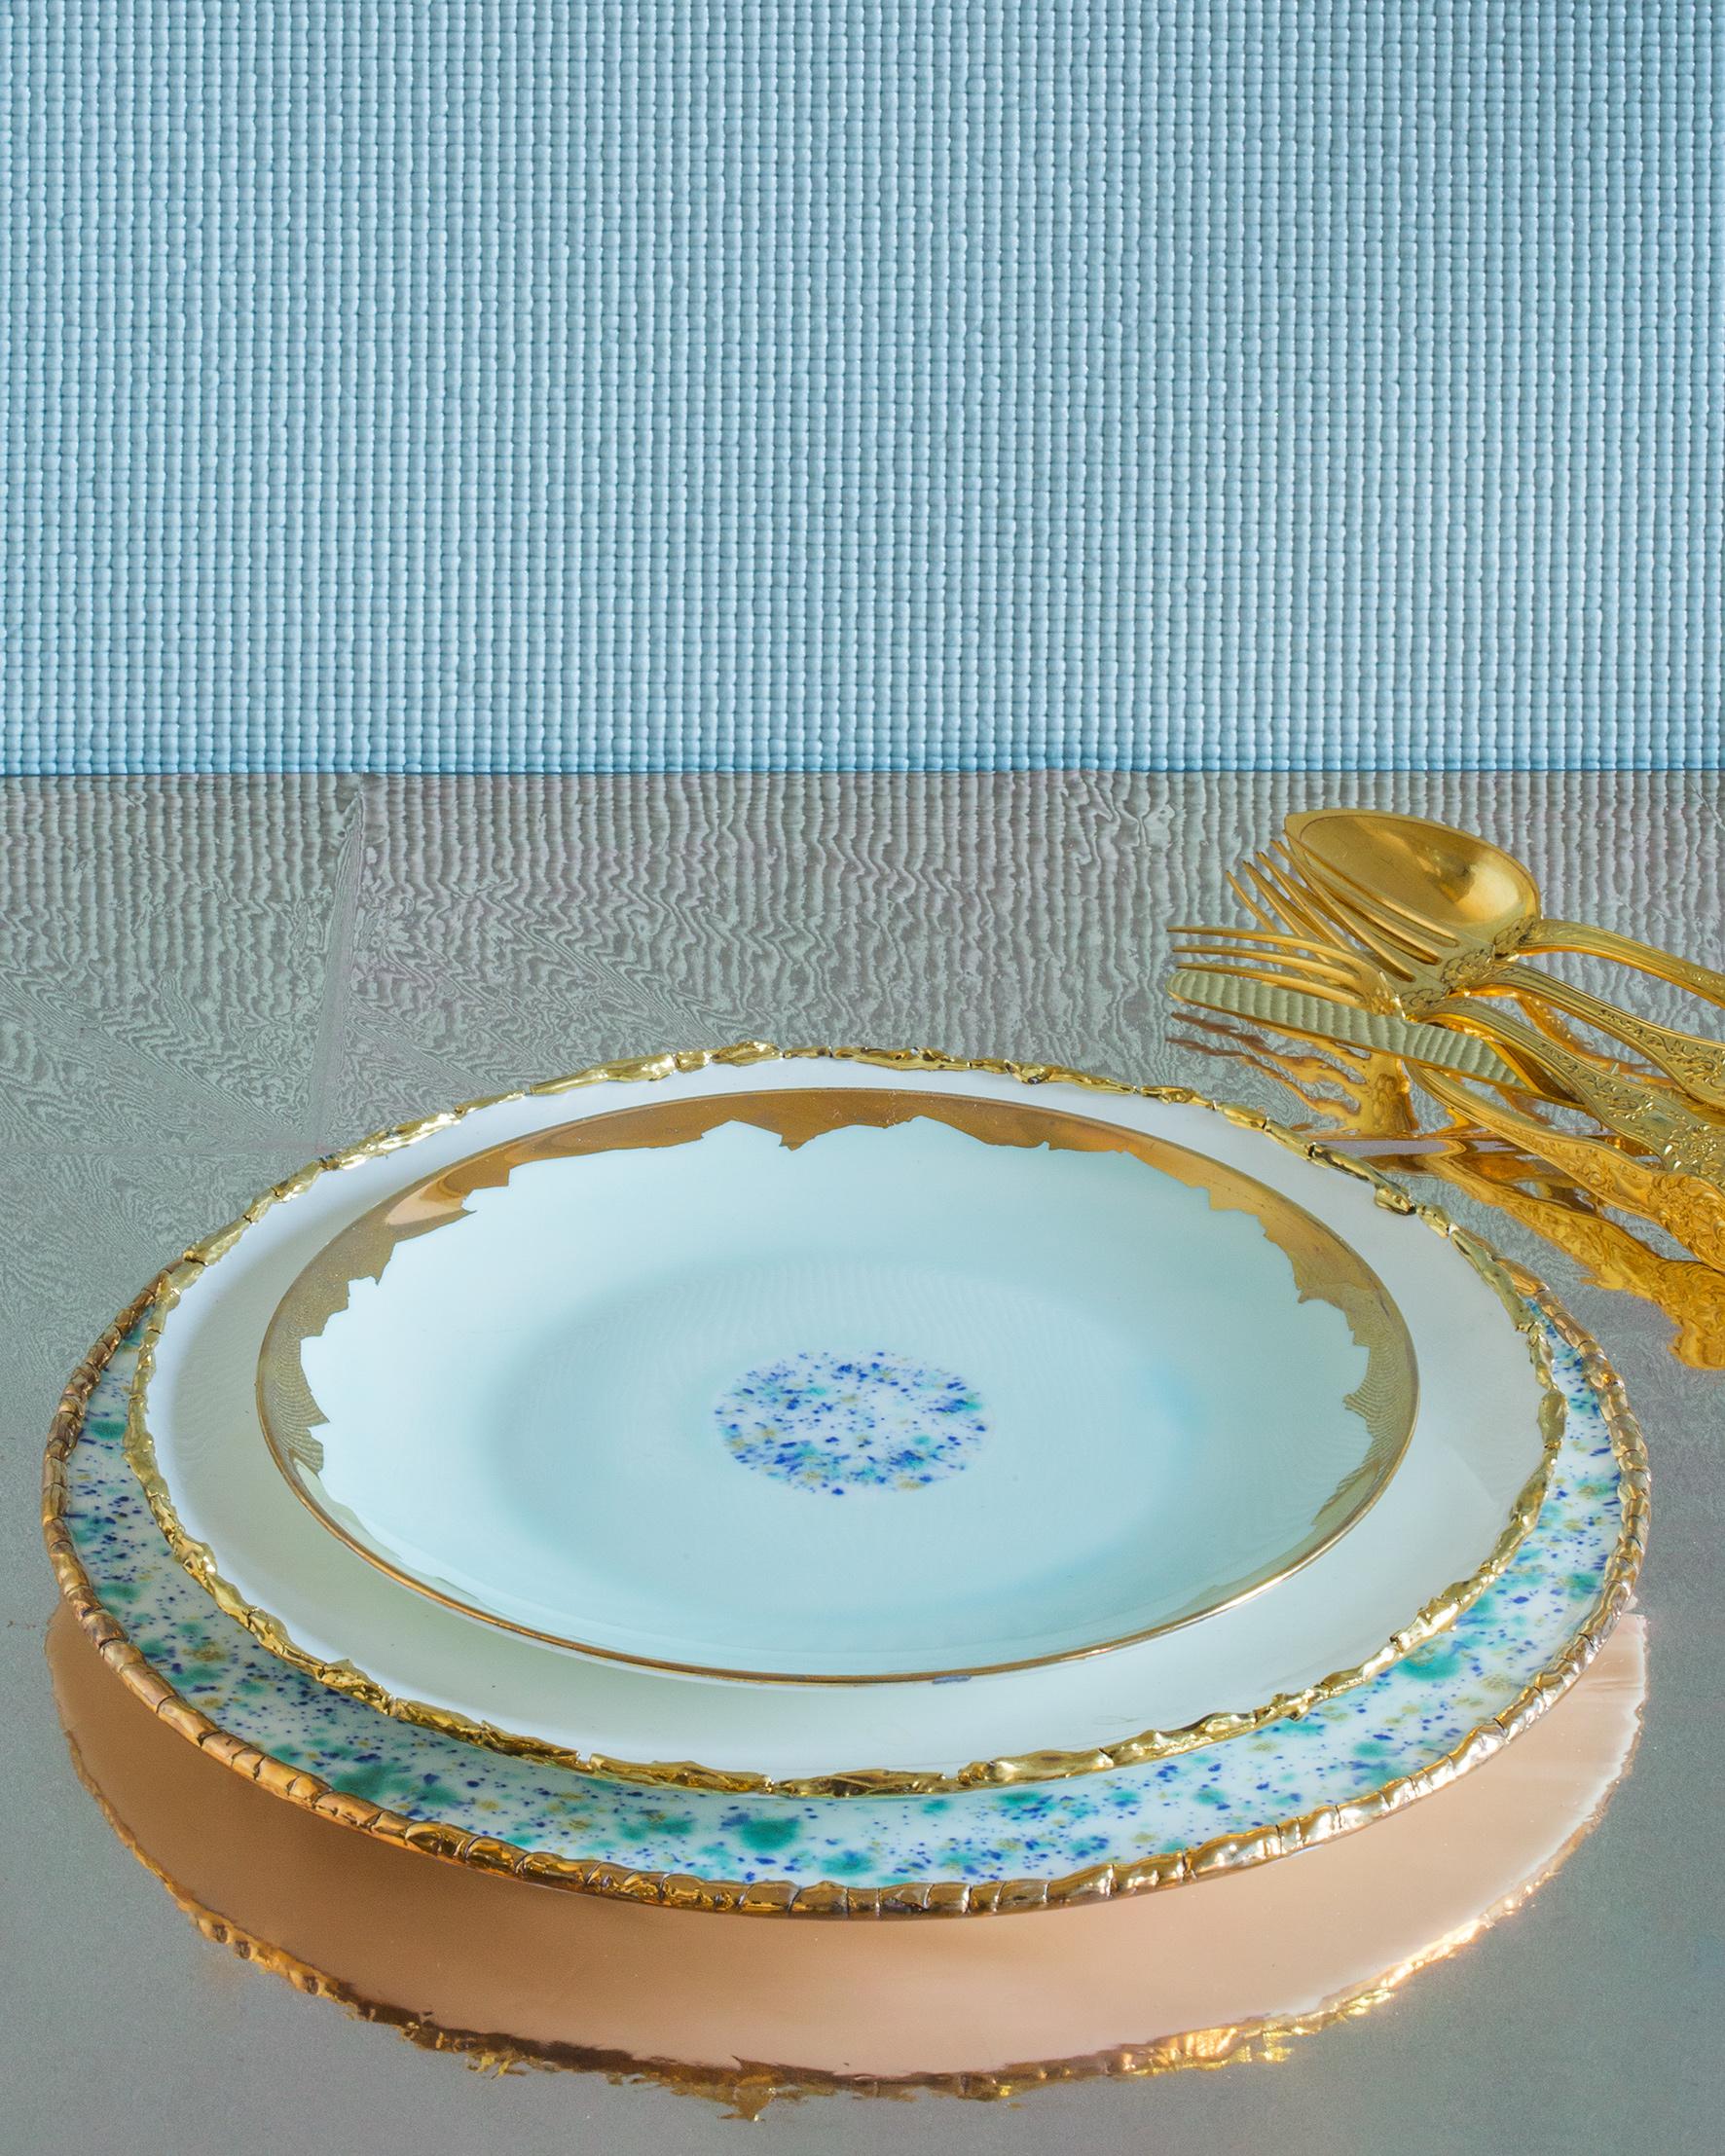 Dieser in Italien aus feinstem Porzellan handgefertigte Teller aus blauem Marmor hat einen originellen goldenen Craquelé-Rand, der das elegante Weiß mit seinem blau-gelben und grünen Dekor in der Mitte betont.

2er-Set Coupe-Teller, Craquelé-Rand